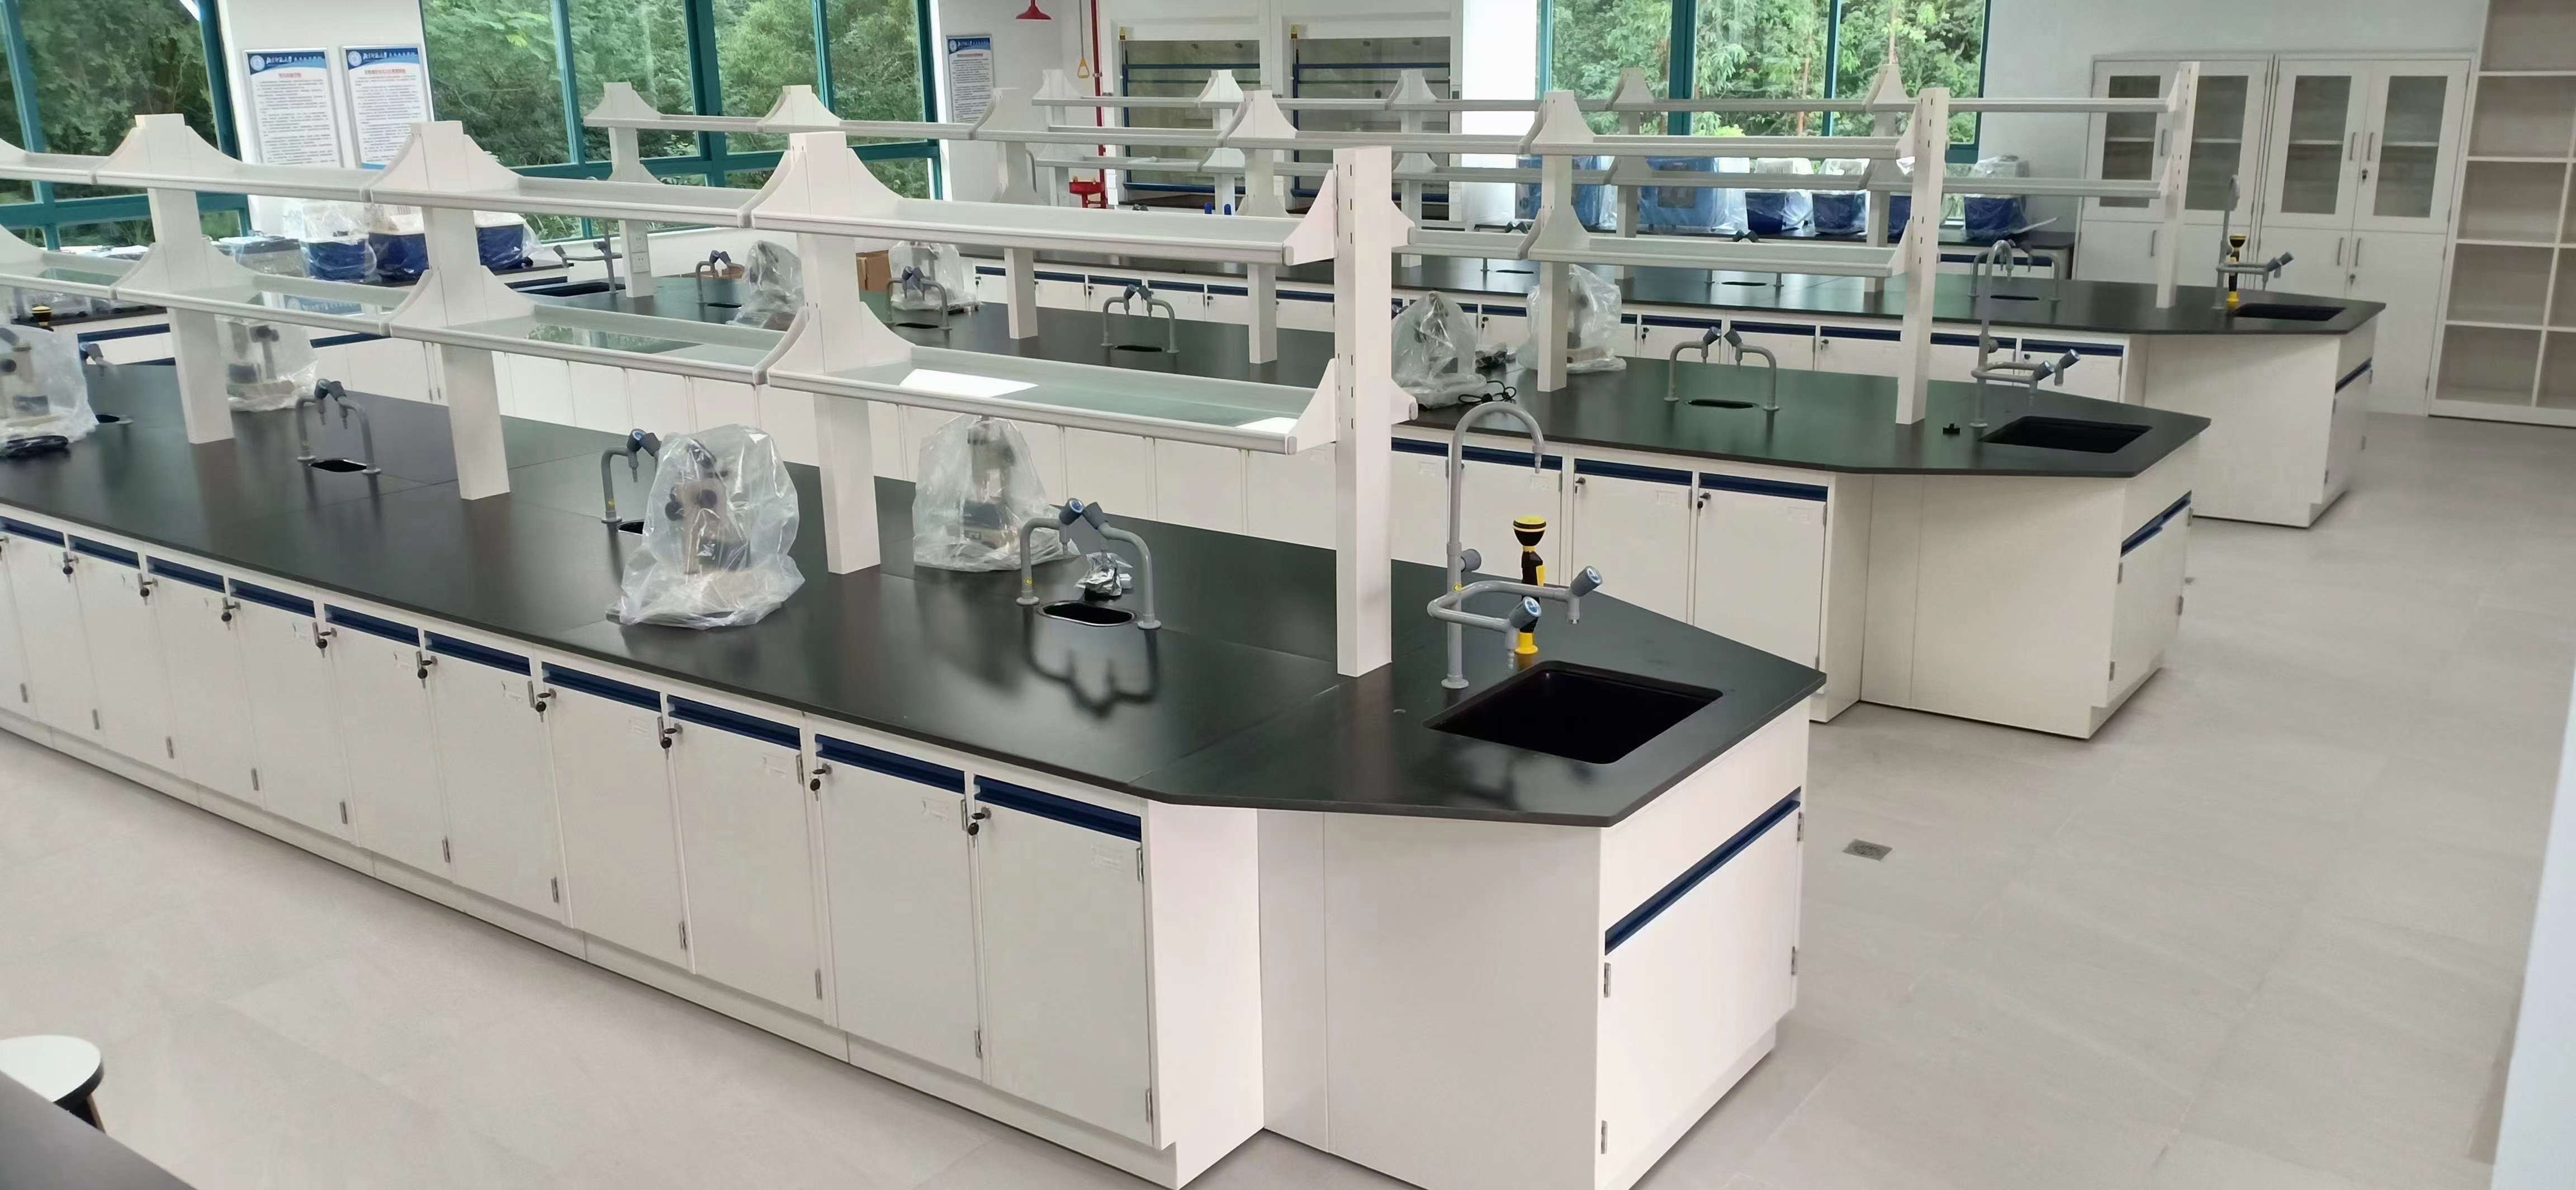 钢木实验台台化验室全钢中央操作台实验边台学生pp化学试验桌